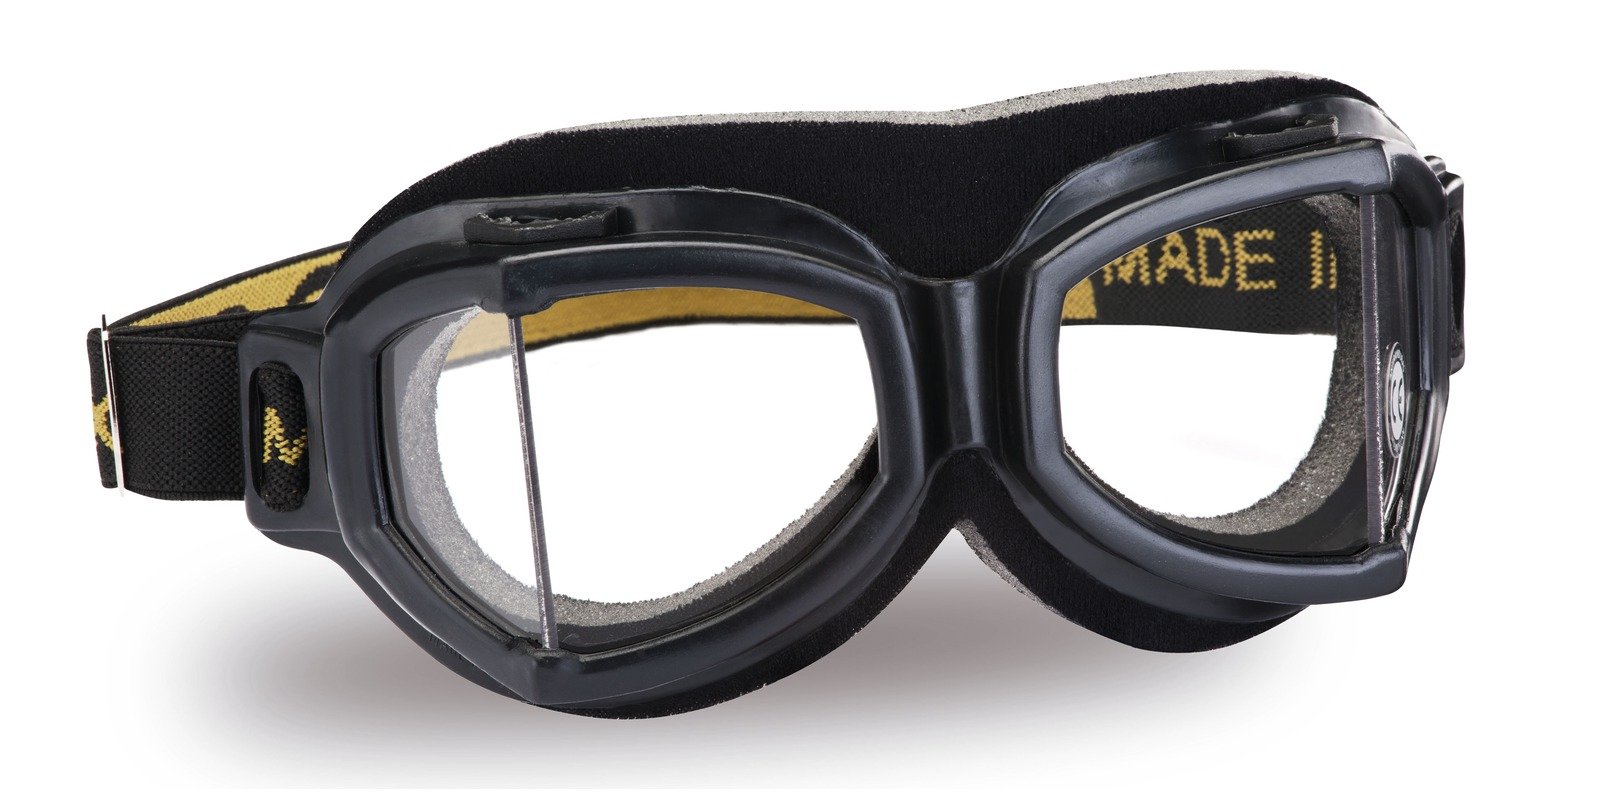 Obrázek produktu Vintage brýle 518, CLIMAX (čirá skla) 1301518108000